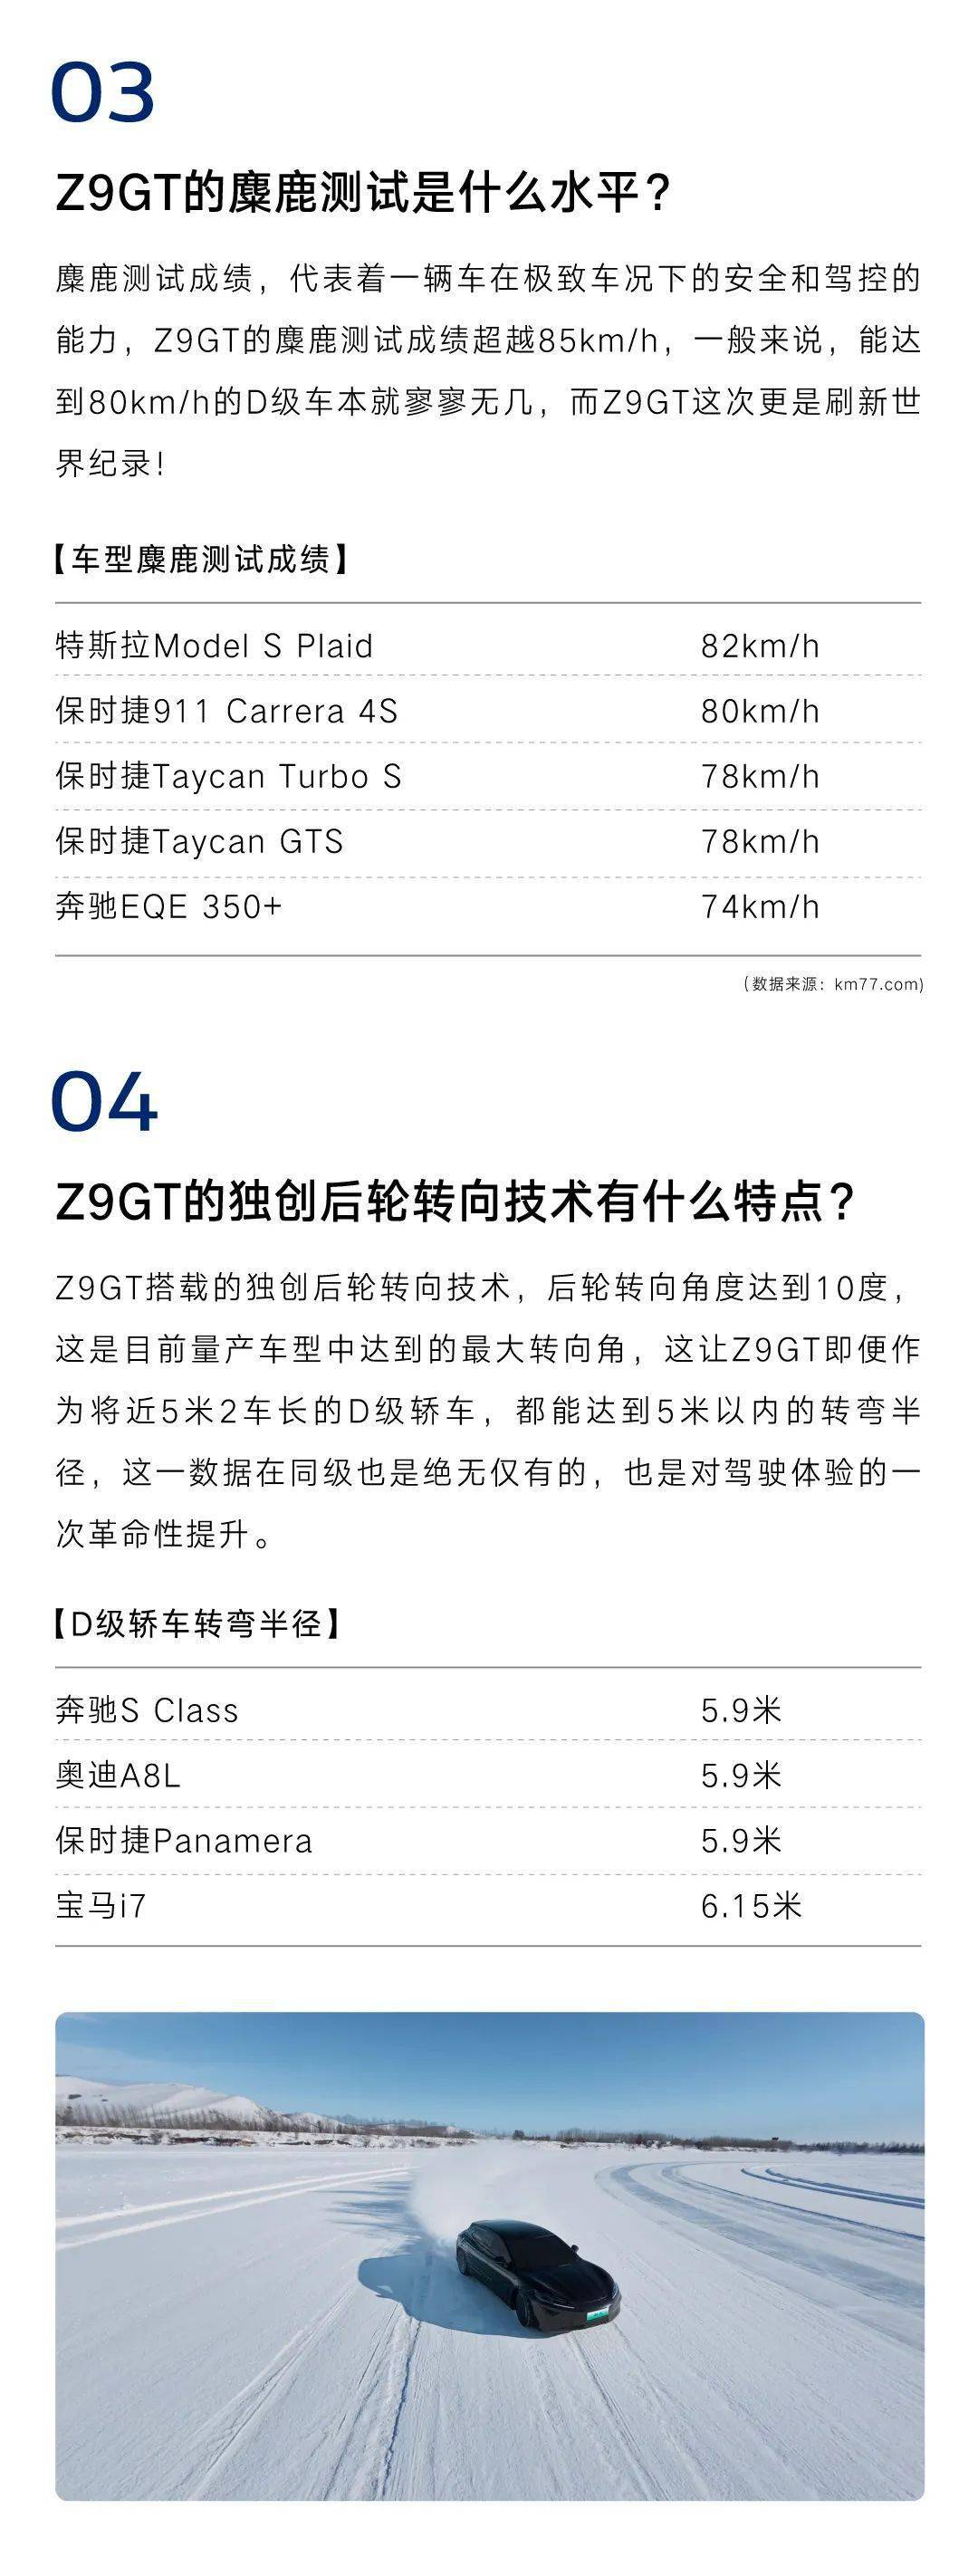 腾势Z9 GT将于5月举行技术发布会 提供多激光雷达选装方案